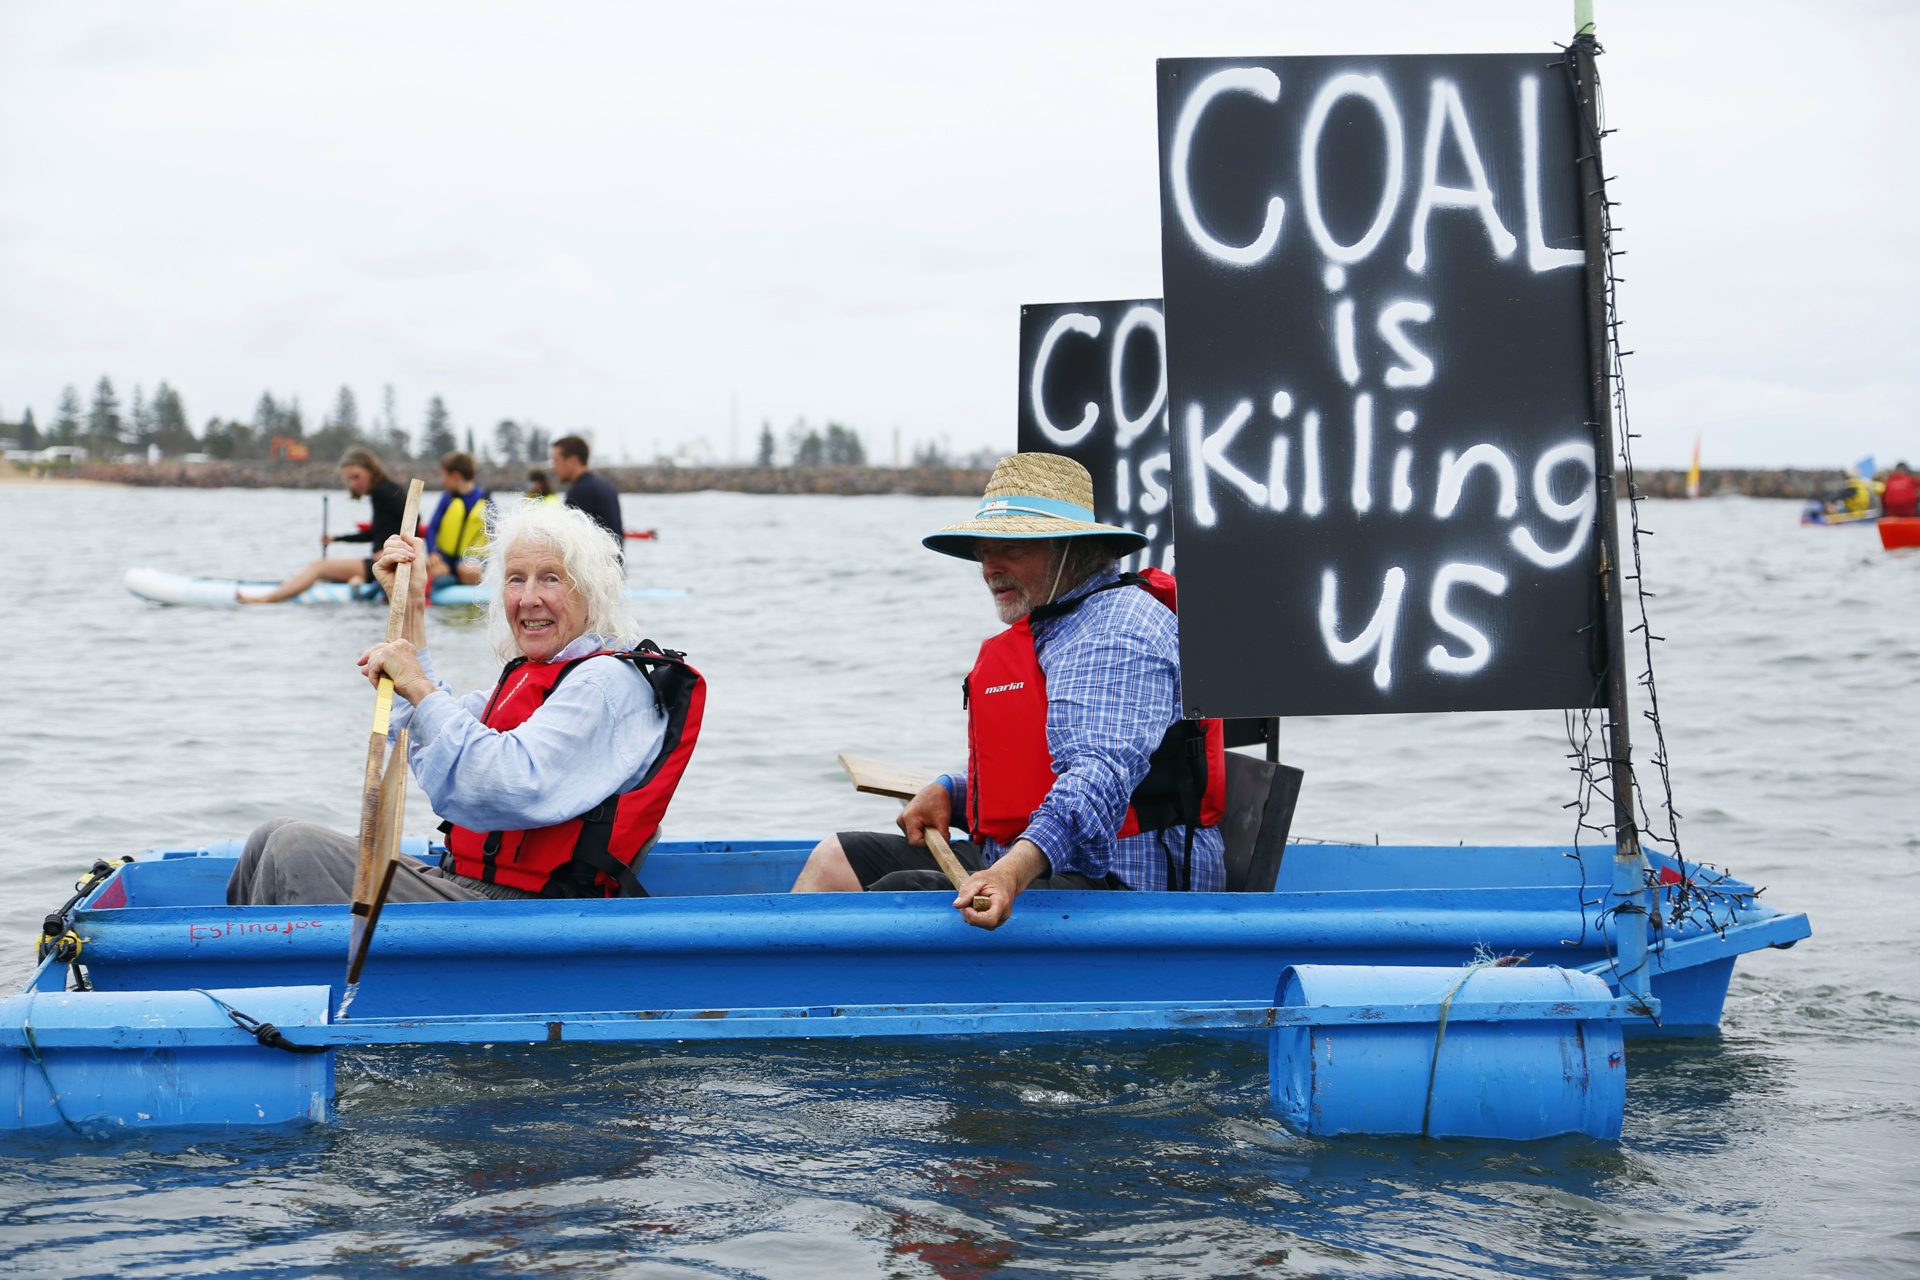 Coal is killing us